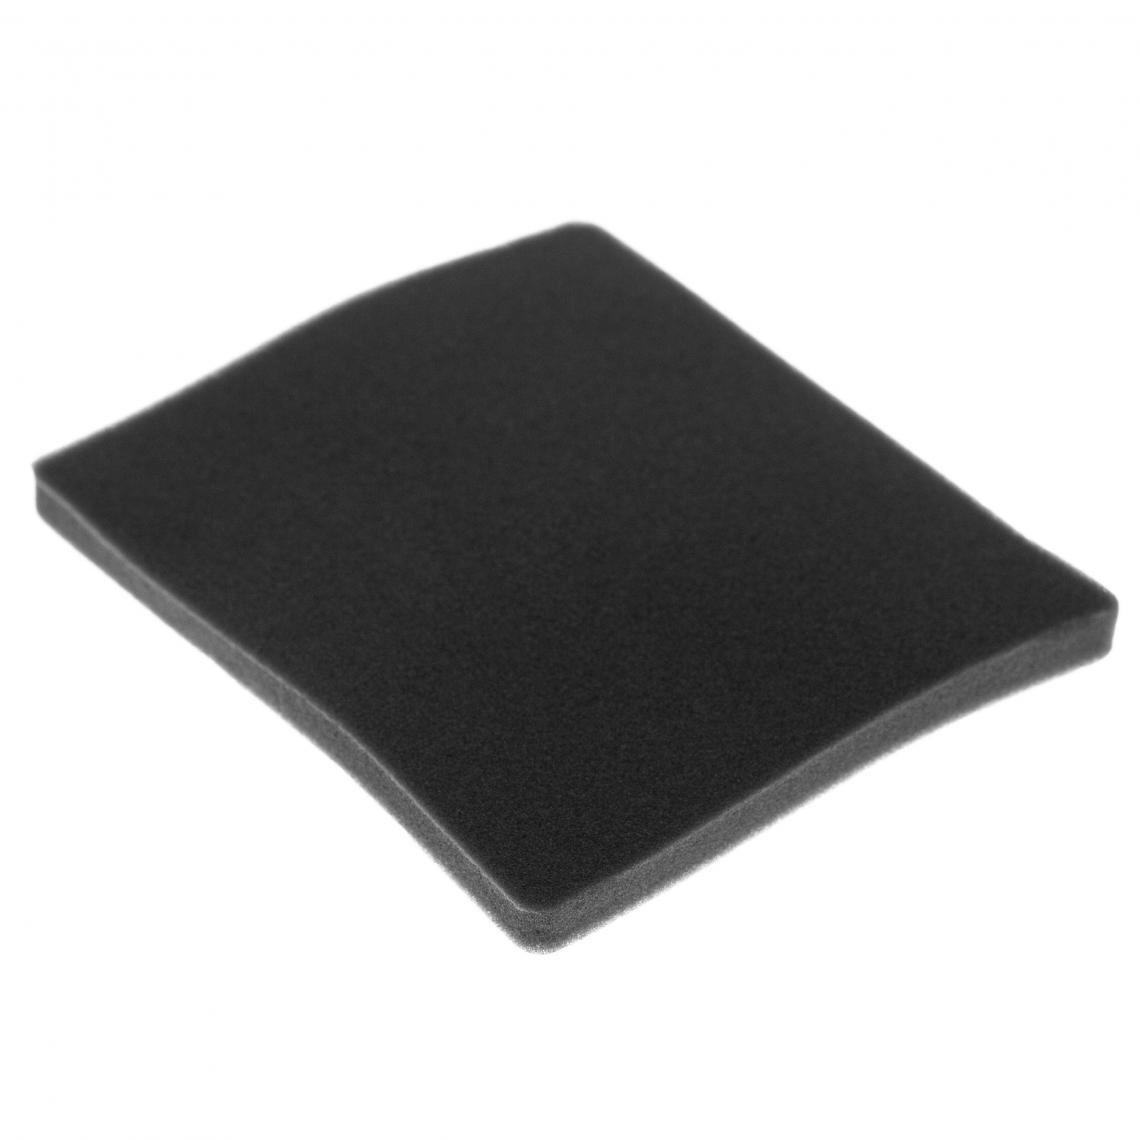 Vhbw - vhbw Filtre compatible avec Electrolux ZCX6205 (910286613) aspirateur - filtre de sortie d'air (filtre éponge), noir - Accessoire entretien des sols